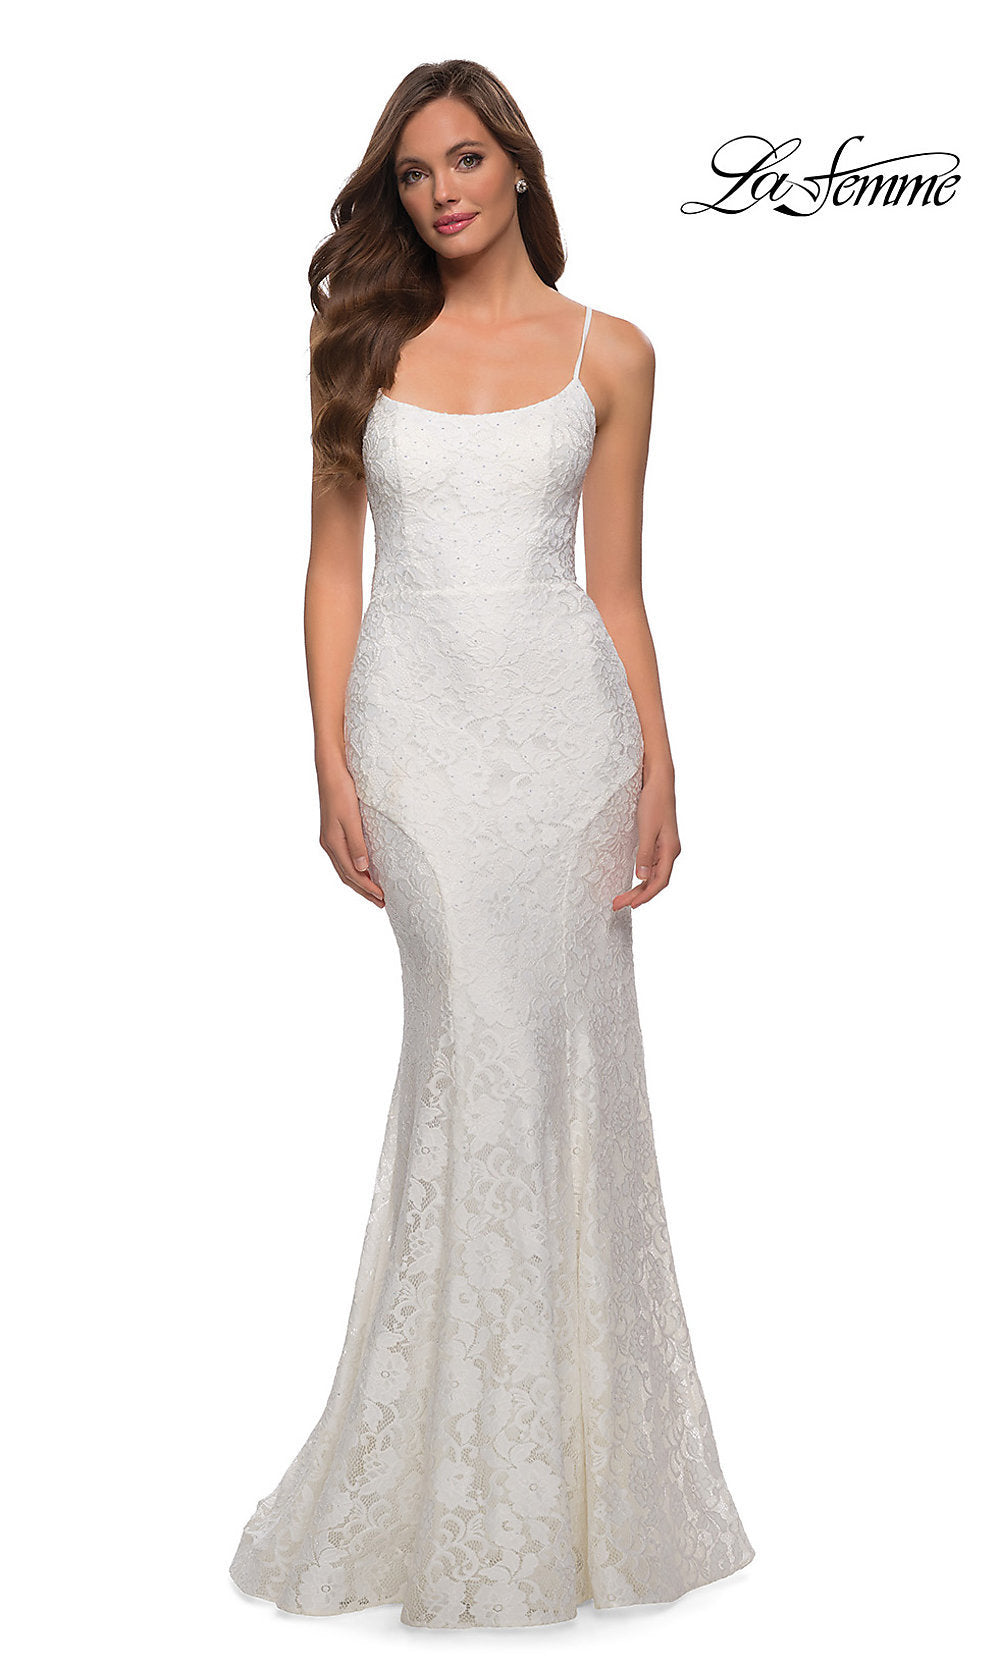 White Floral-Lace Long La Femme Mermaid Prom Dress